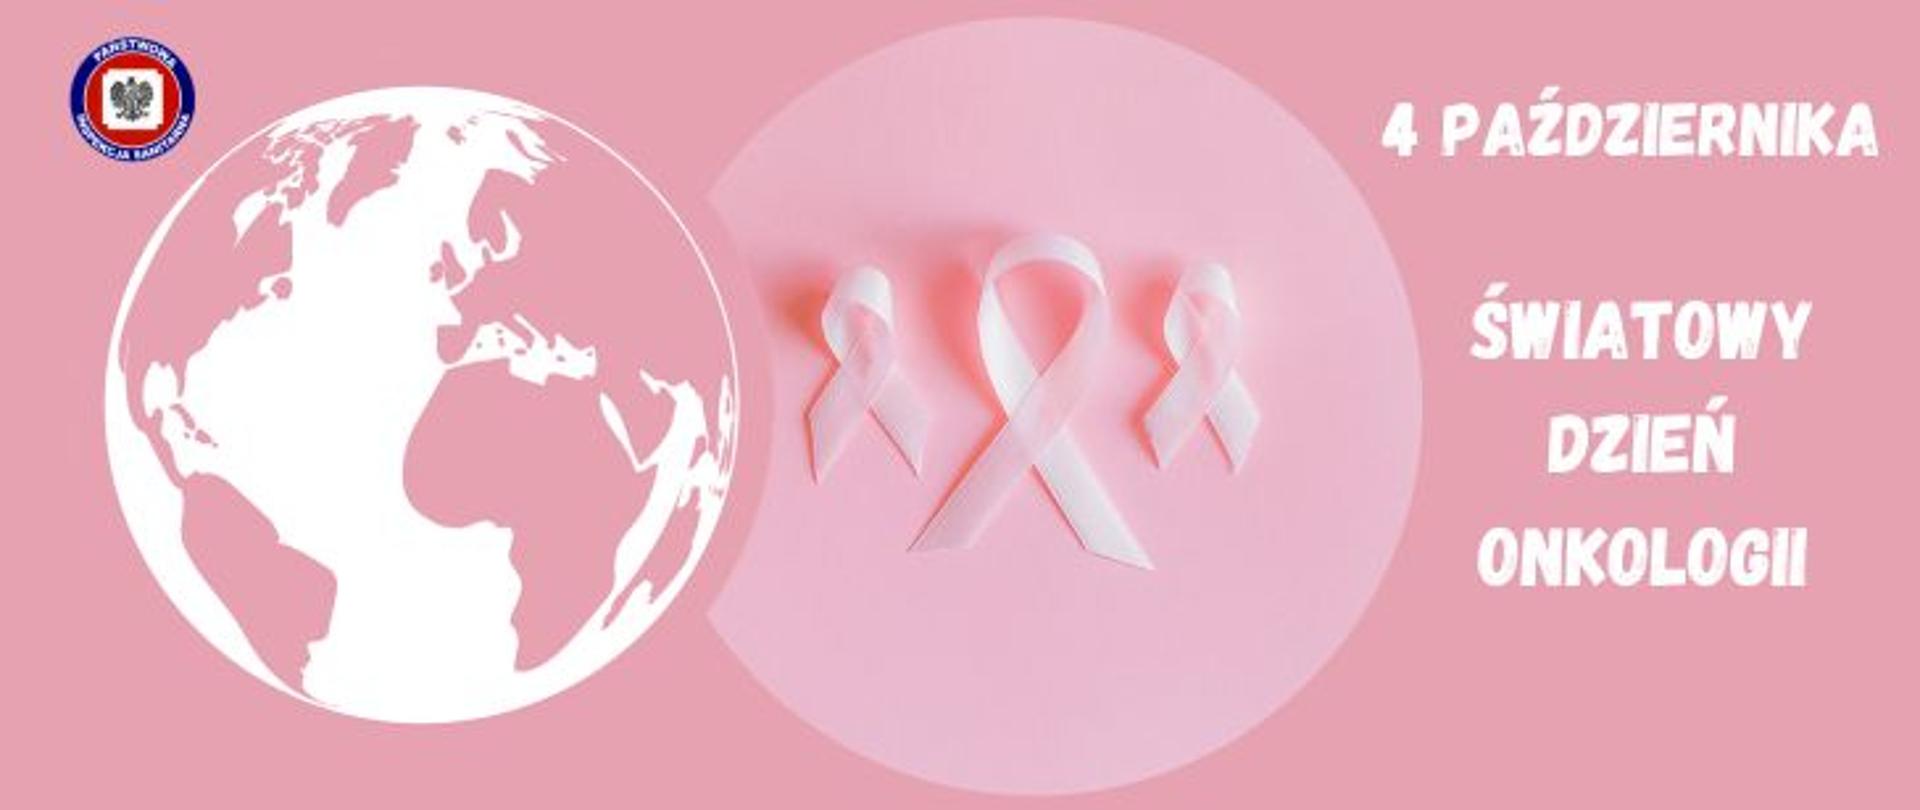 Grafika w tonacji różowo-białej, od prawej strony jasny napis 4 października Światowy Dzień Onkologii, na środku w różowym okręgu trzy różowe wstążeczki, z lewej biało-różowa kula ziemska i w lewym górnym rogu logo Państwowej Inspekcji Sanitarnej.